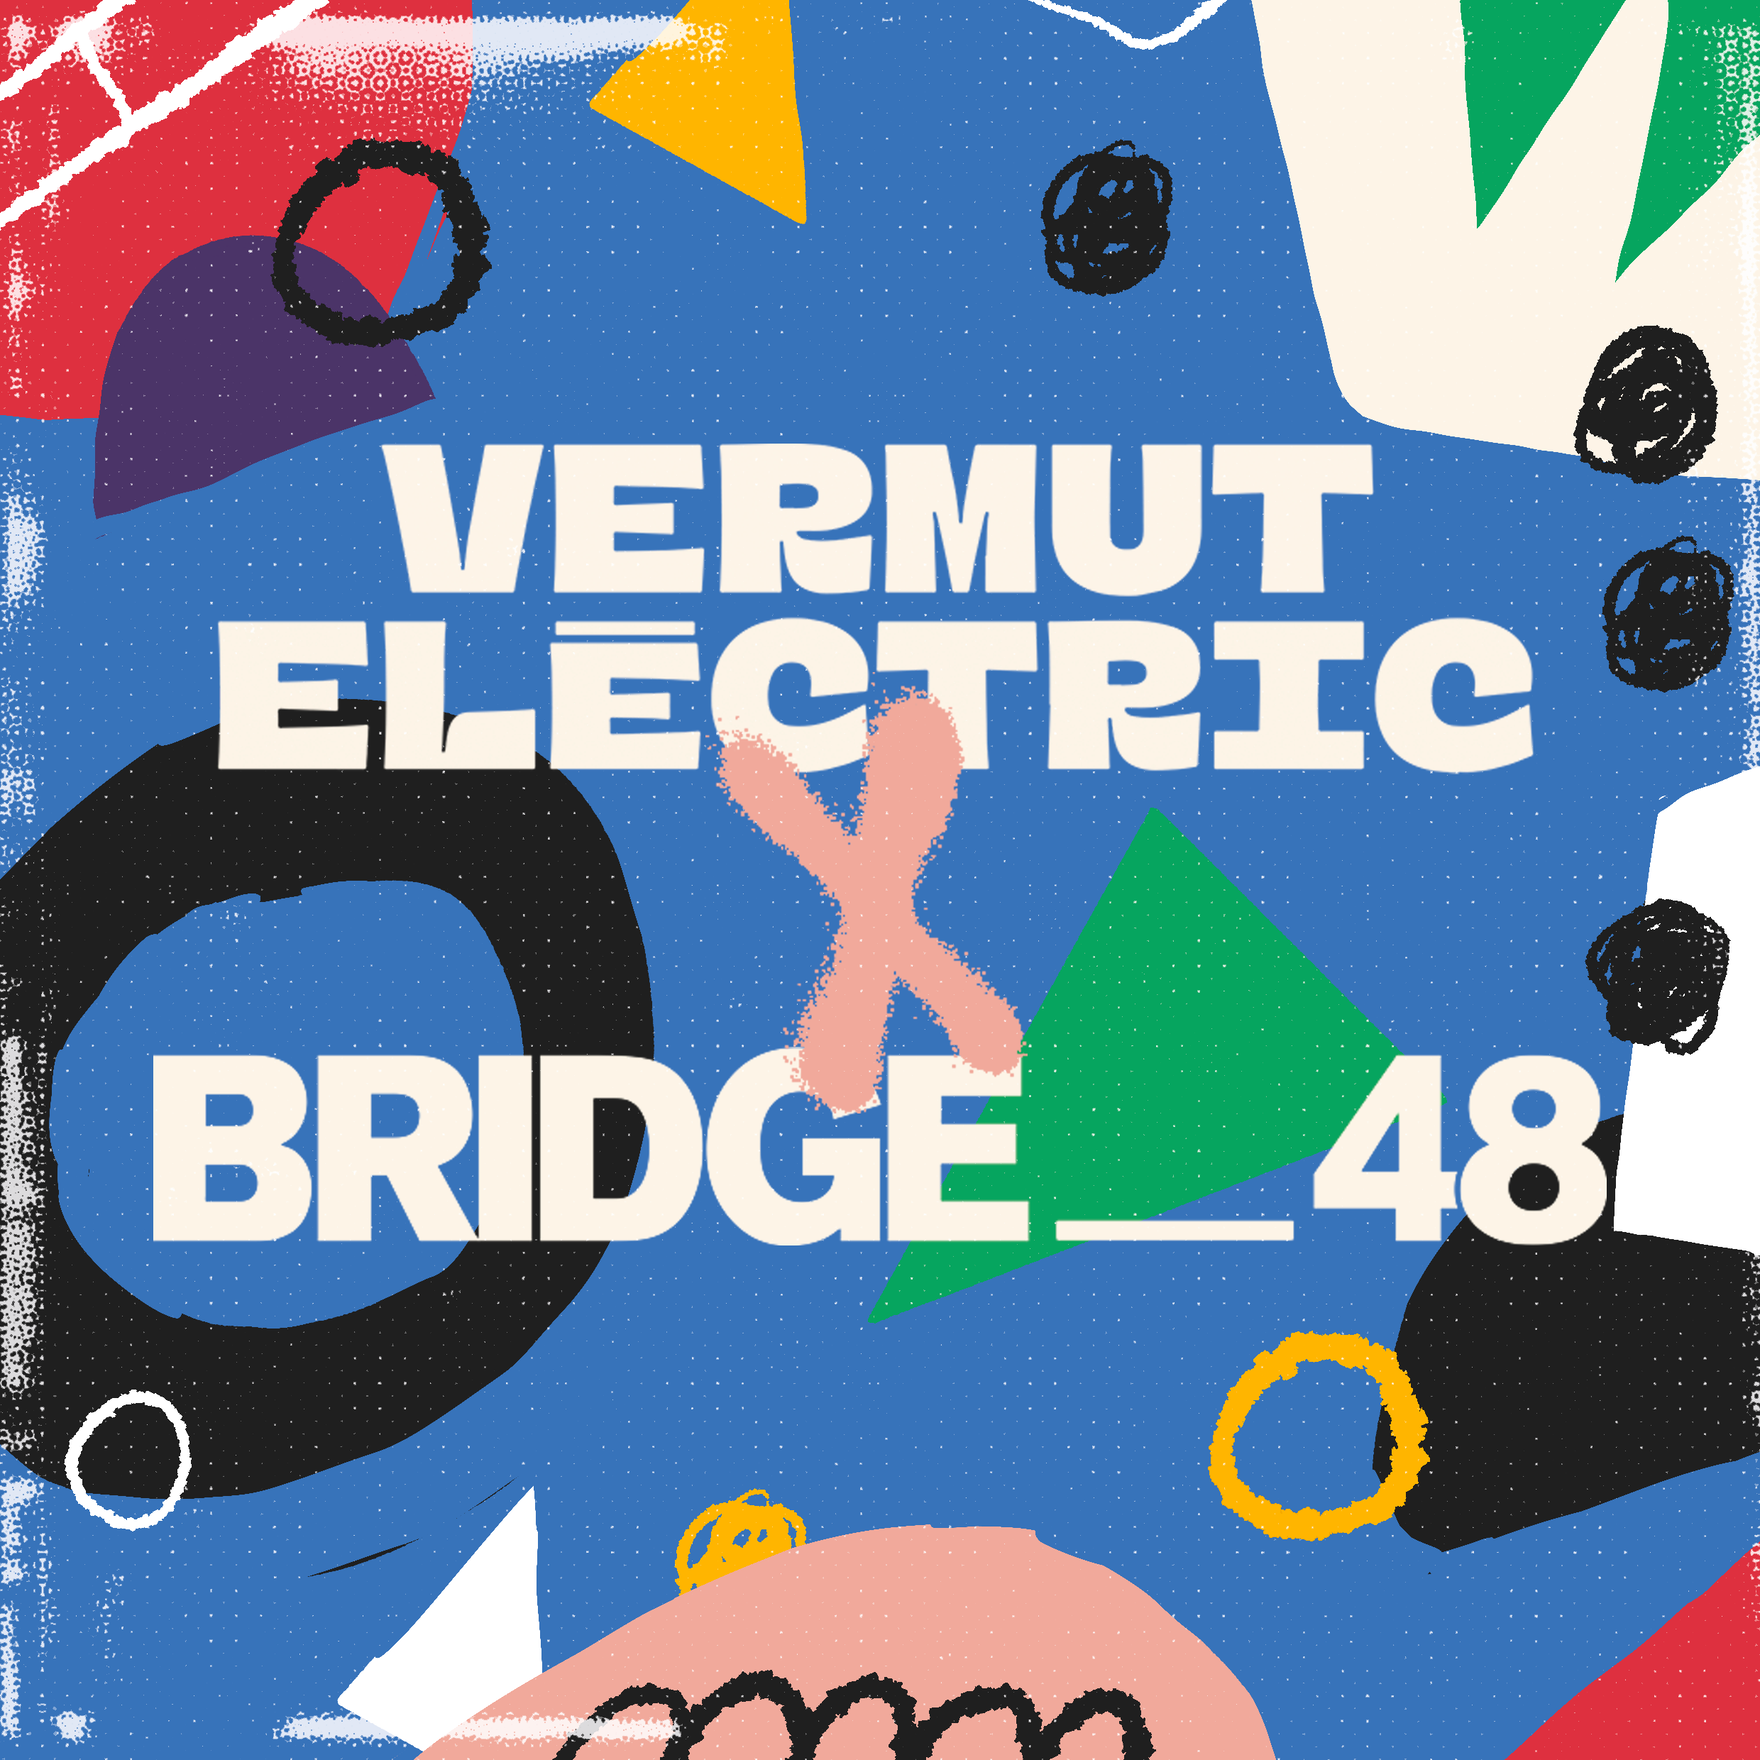 VERMUT ELÈCTRIC X BRIDGE 48 - フライヤー裏